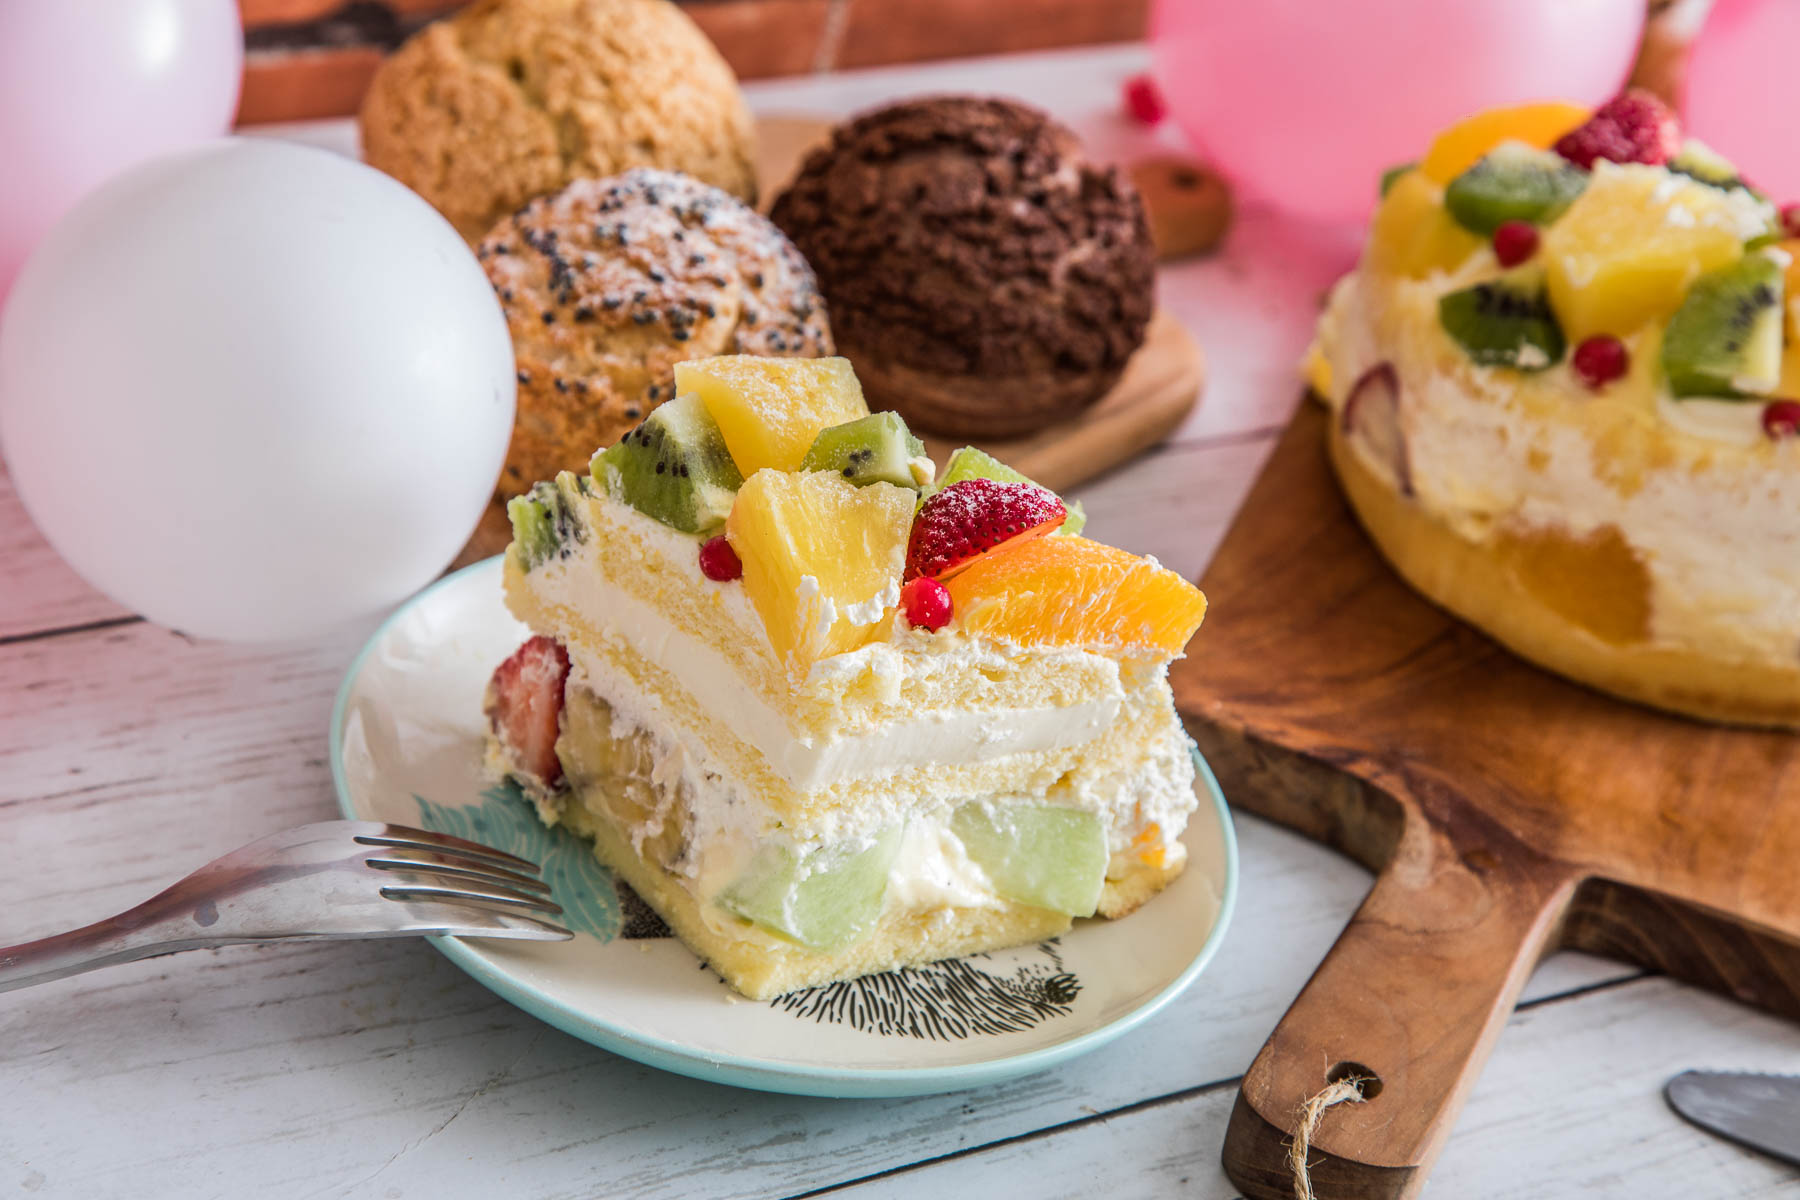 台北水果蛋糕,母親節蛋糕,生日蛋糕,宅配母親節蛋糕,母親節蛋糕推薦,Nozomi Bakery 松江總店,Nozomi Bakery,Nozomi Bakery 蛋糕,台北蛋糕